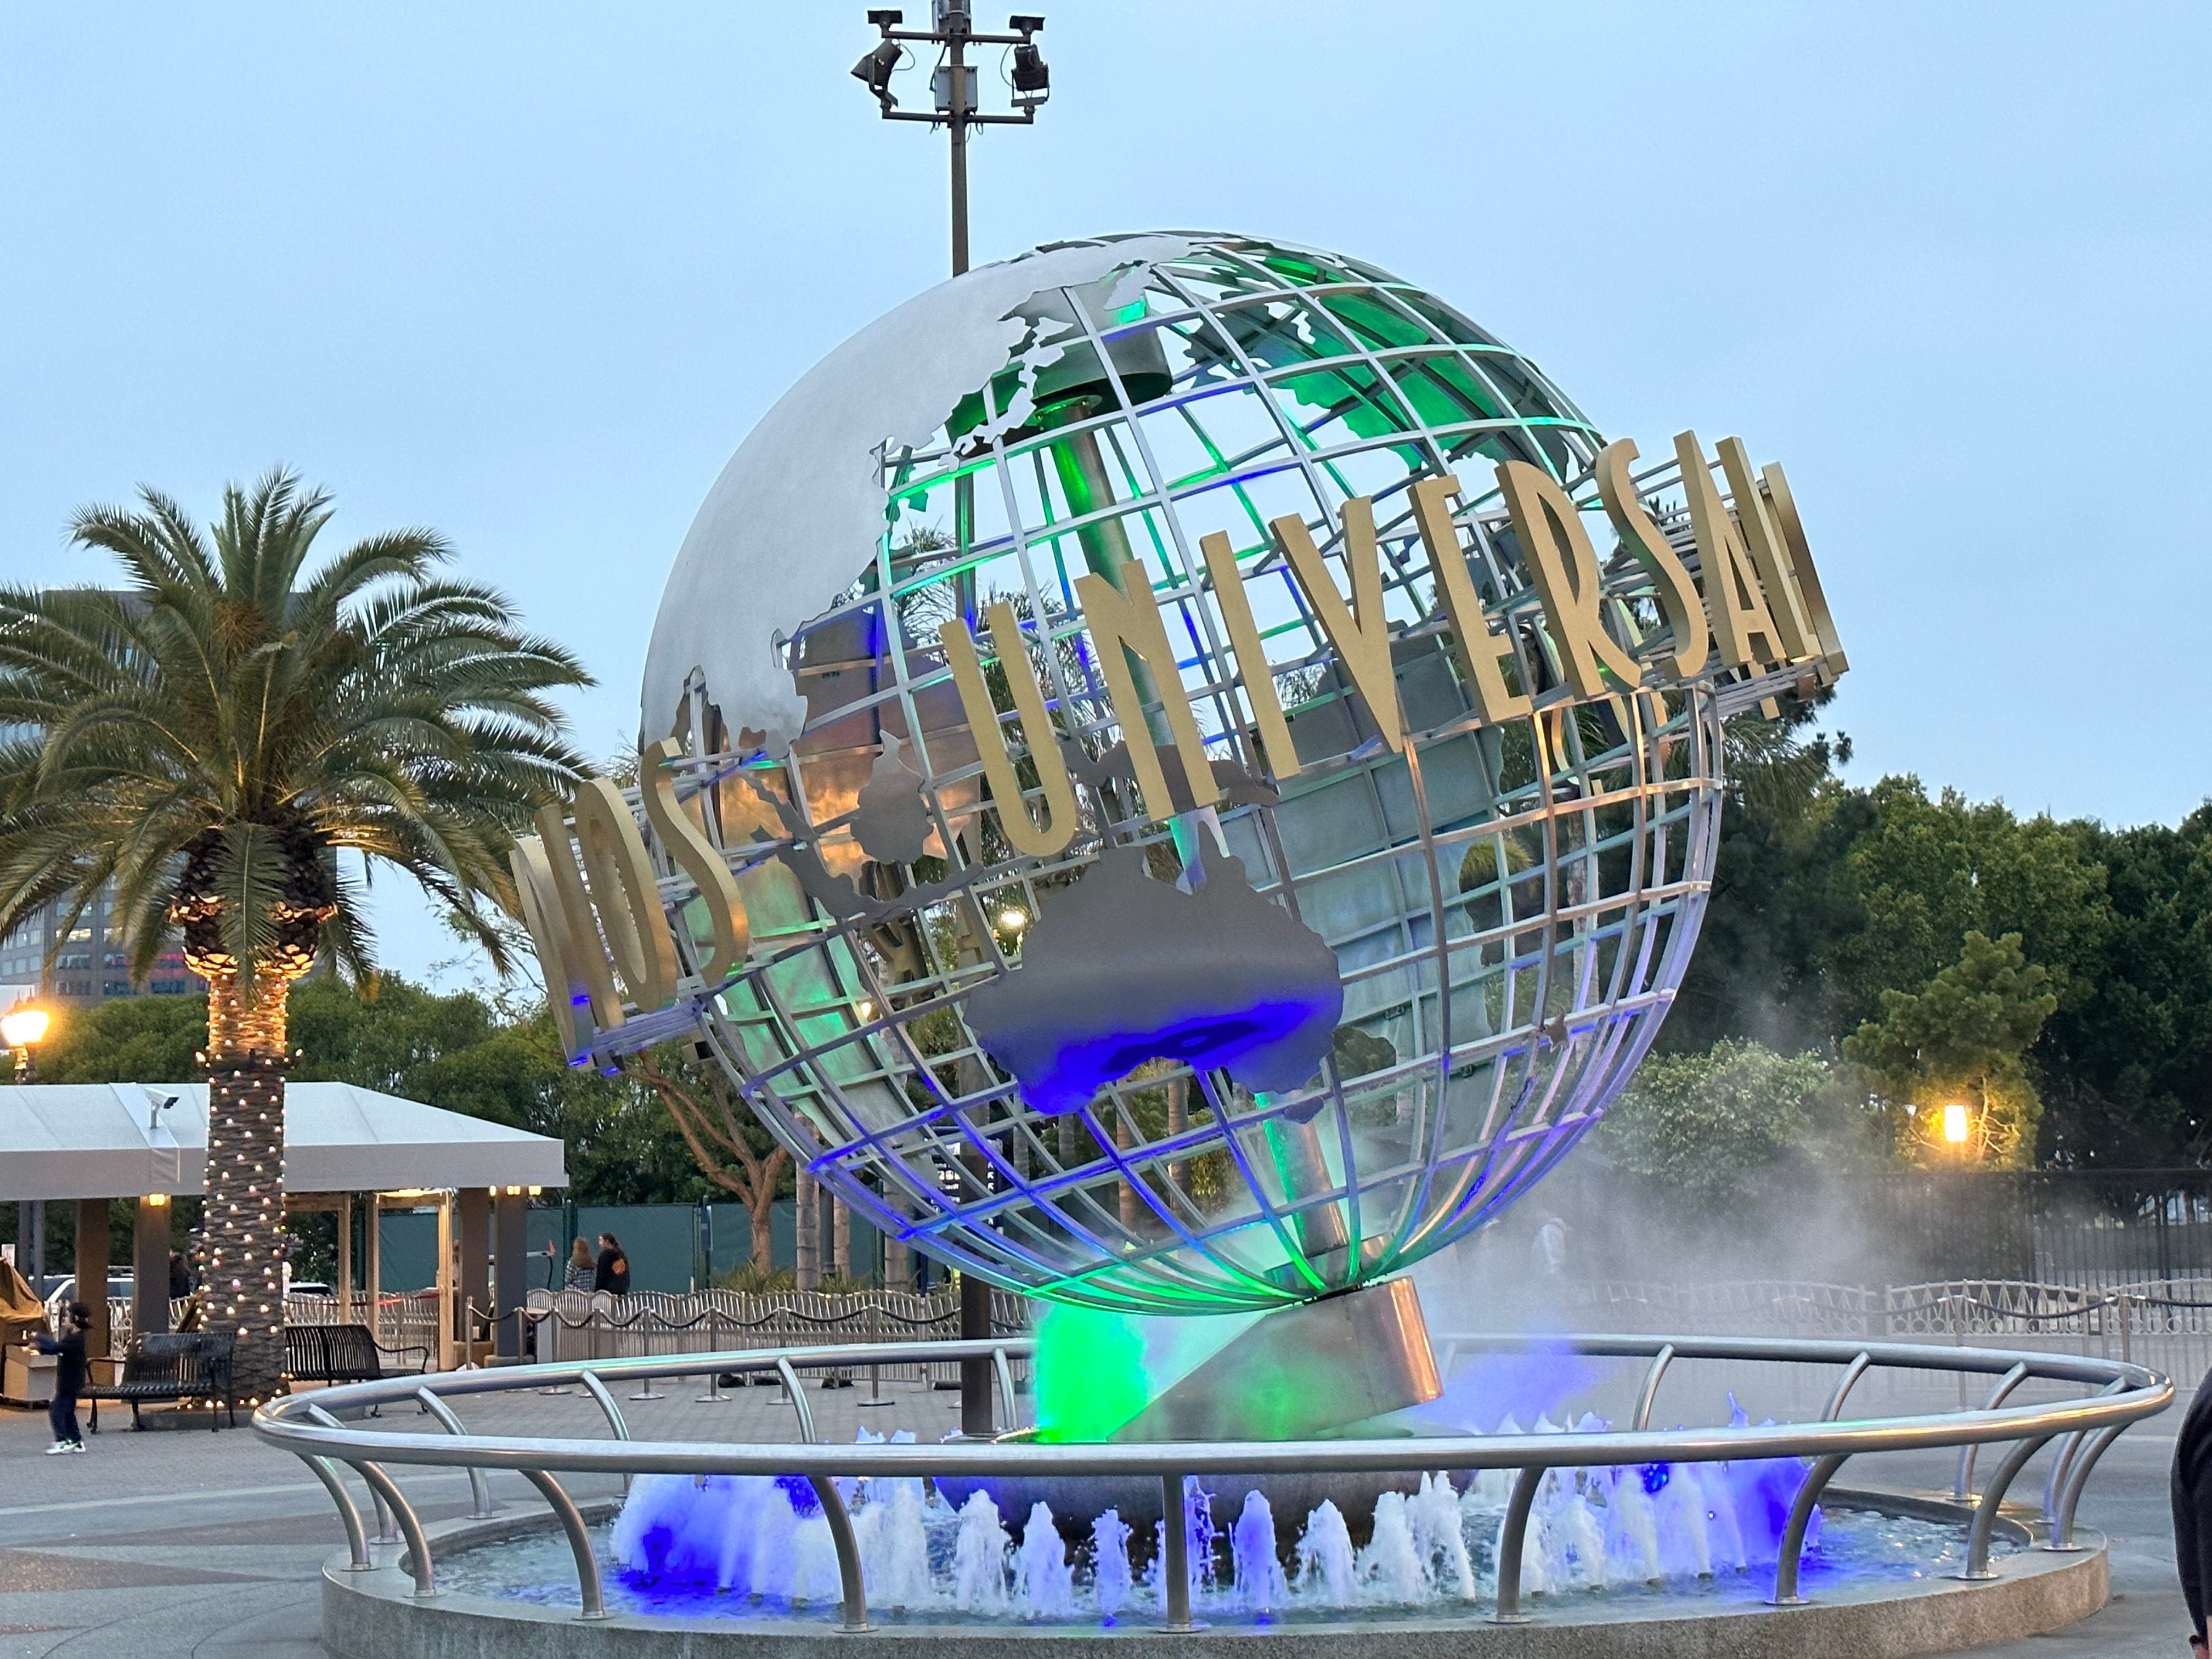 Der Globus der Universal Studios leuchtete blau und grün